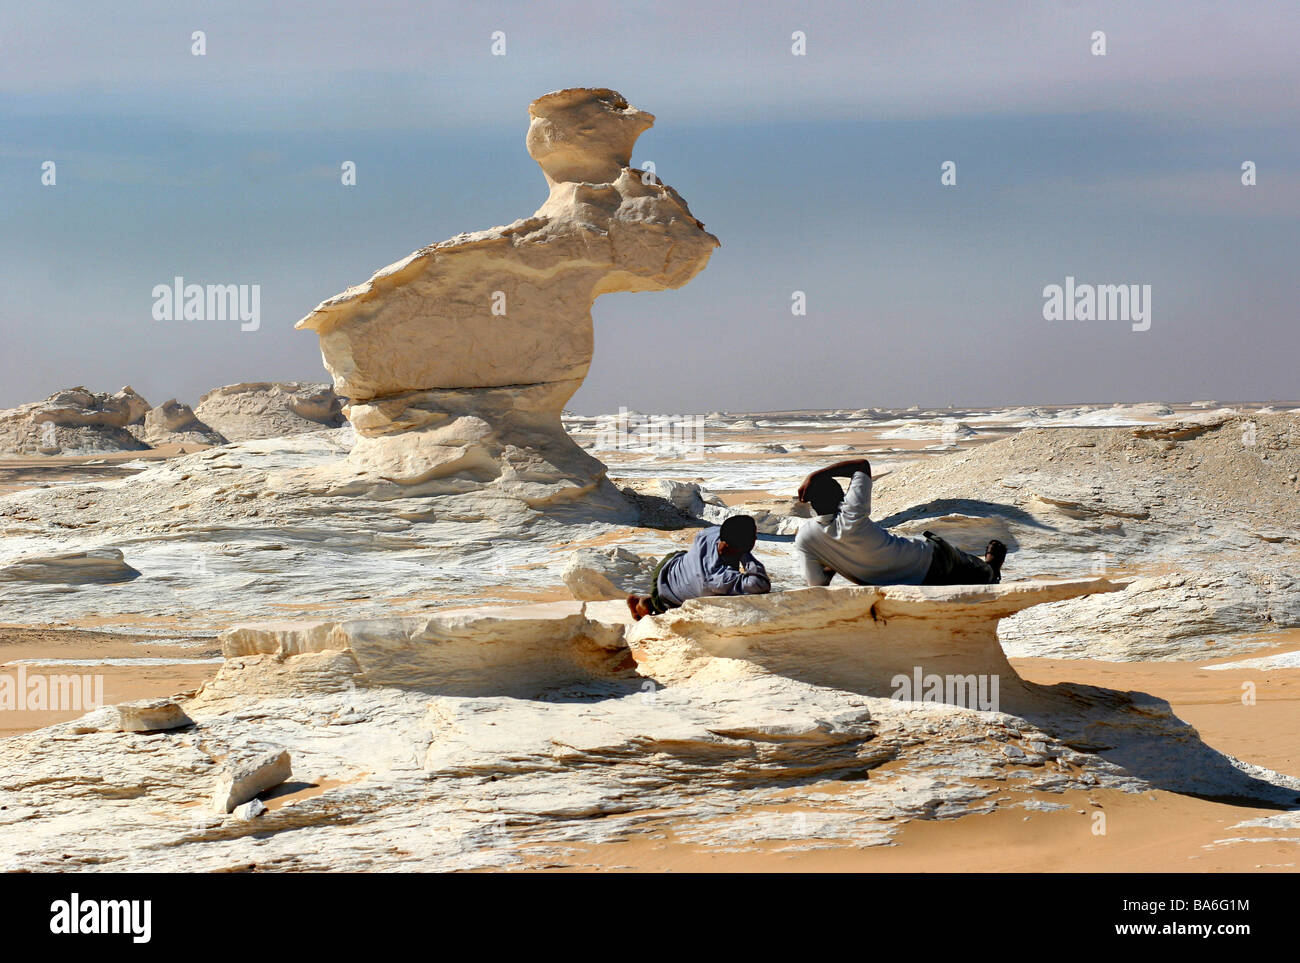 Ägypten-Libysche Wüste Felsformationen Natur Leben negativ Vegetation lose erhitzen Trockenheit staubigen sandigen weißen Wüste Felsen Stockfoto